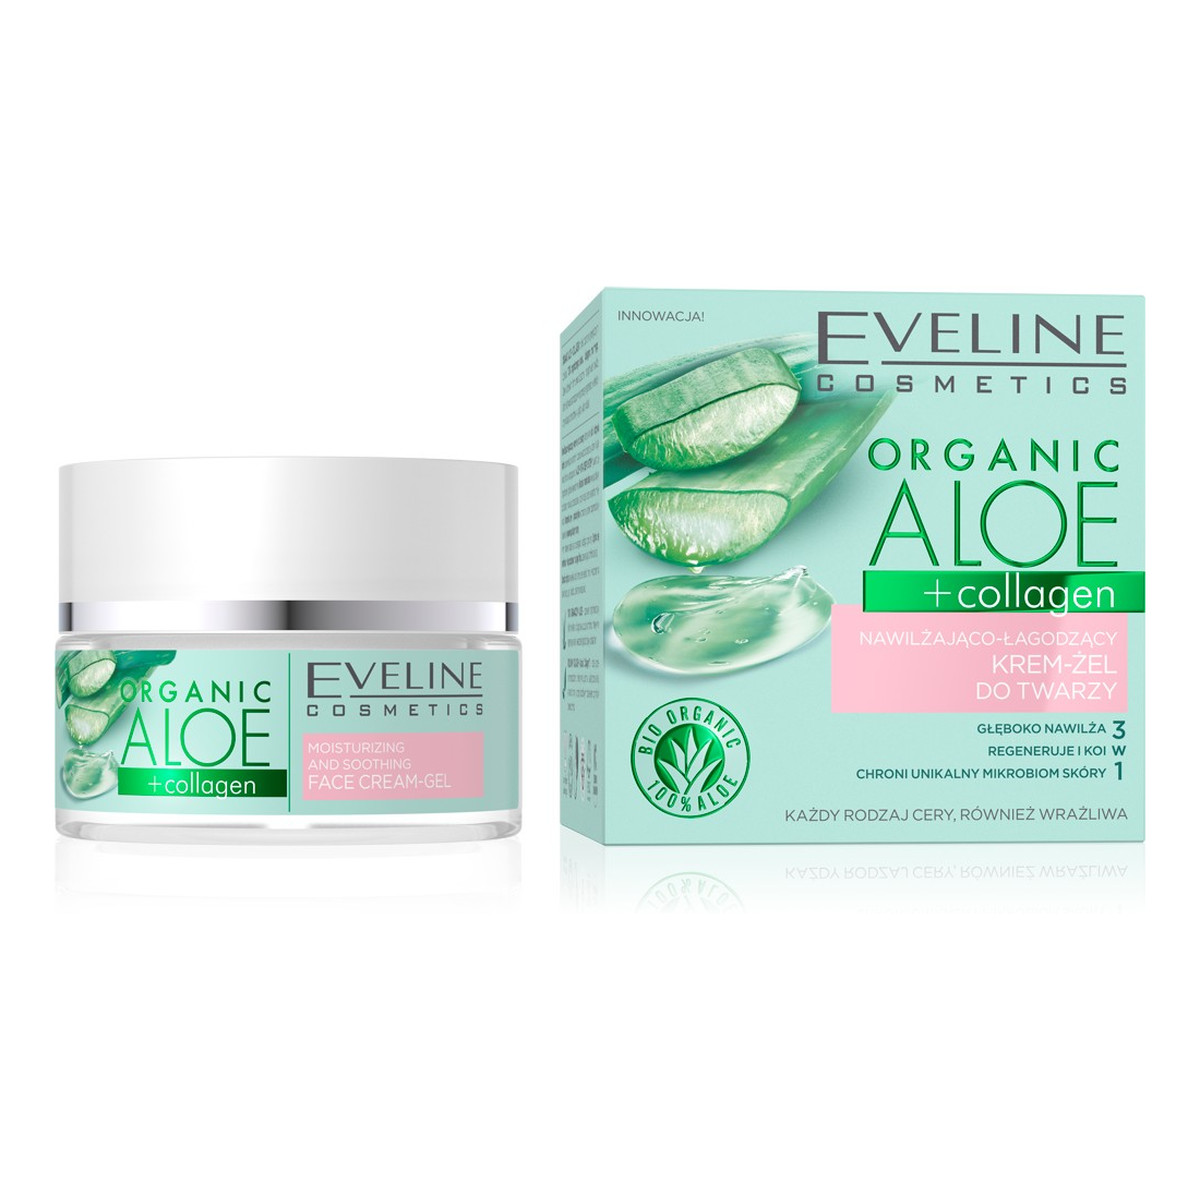 Eveline Organic Aloe + Collagen Nawilżająco - Łagodzący Krem-żel do twarzy 3w1 - cera każdego rodzaju 50ml